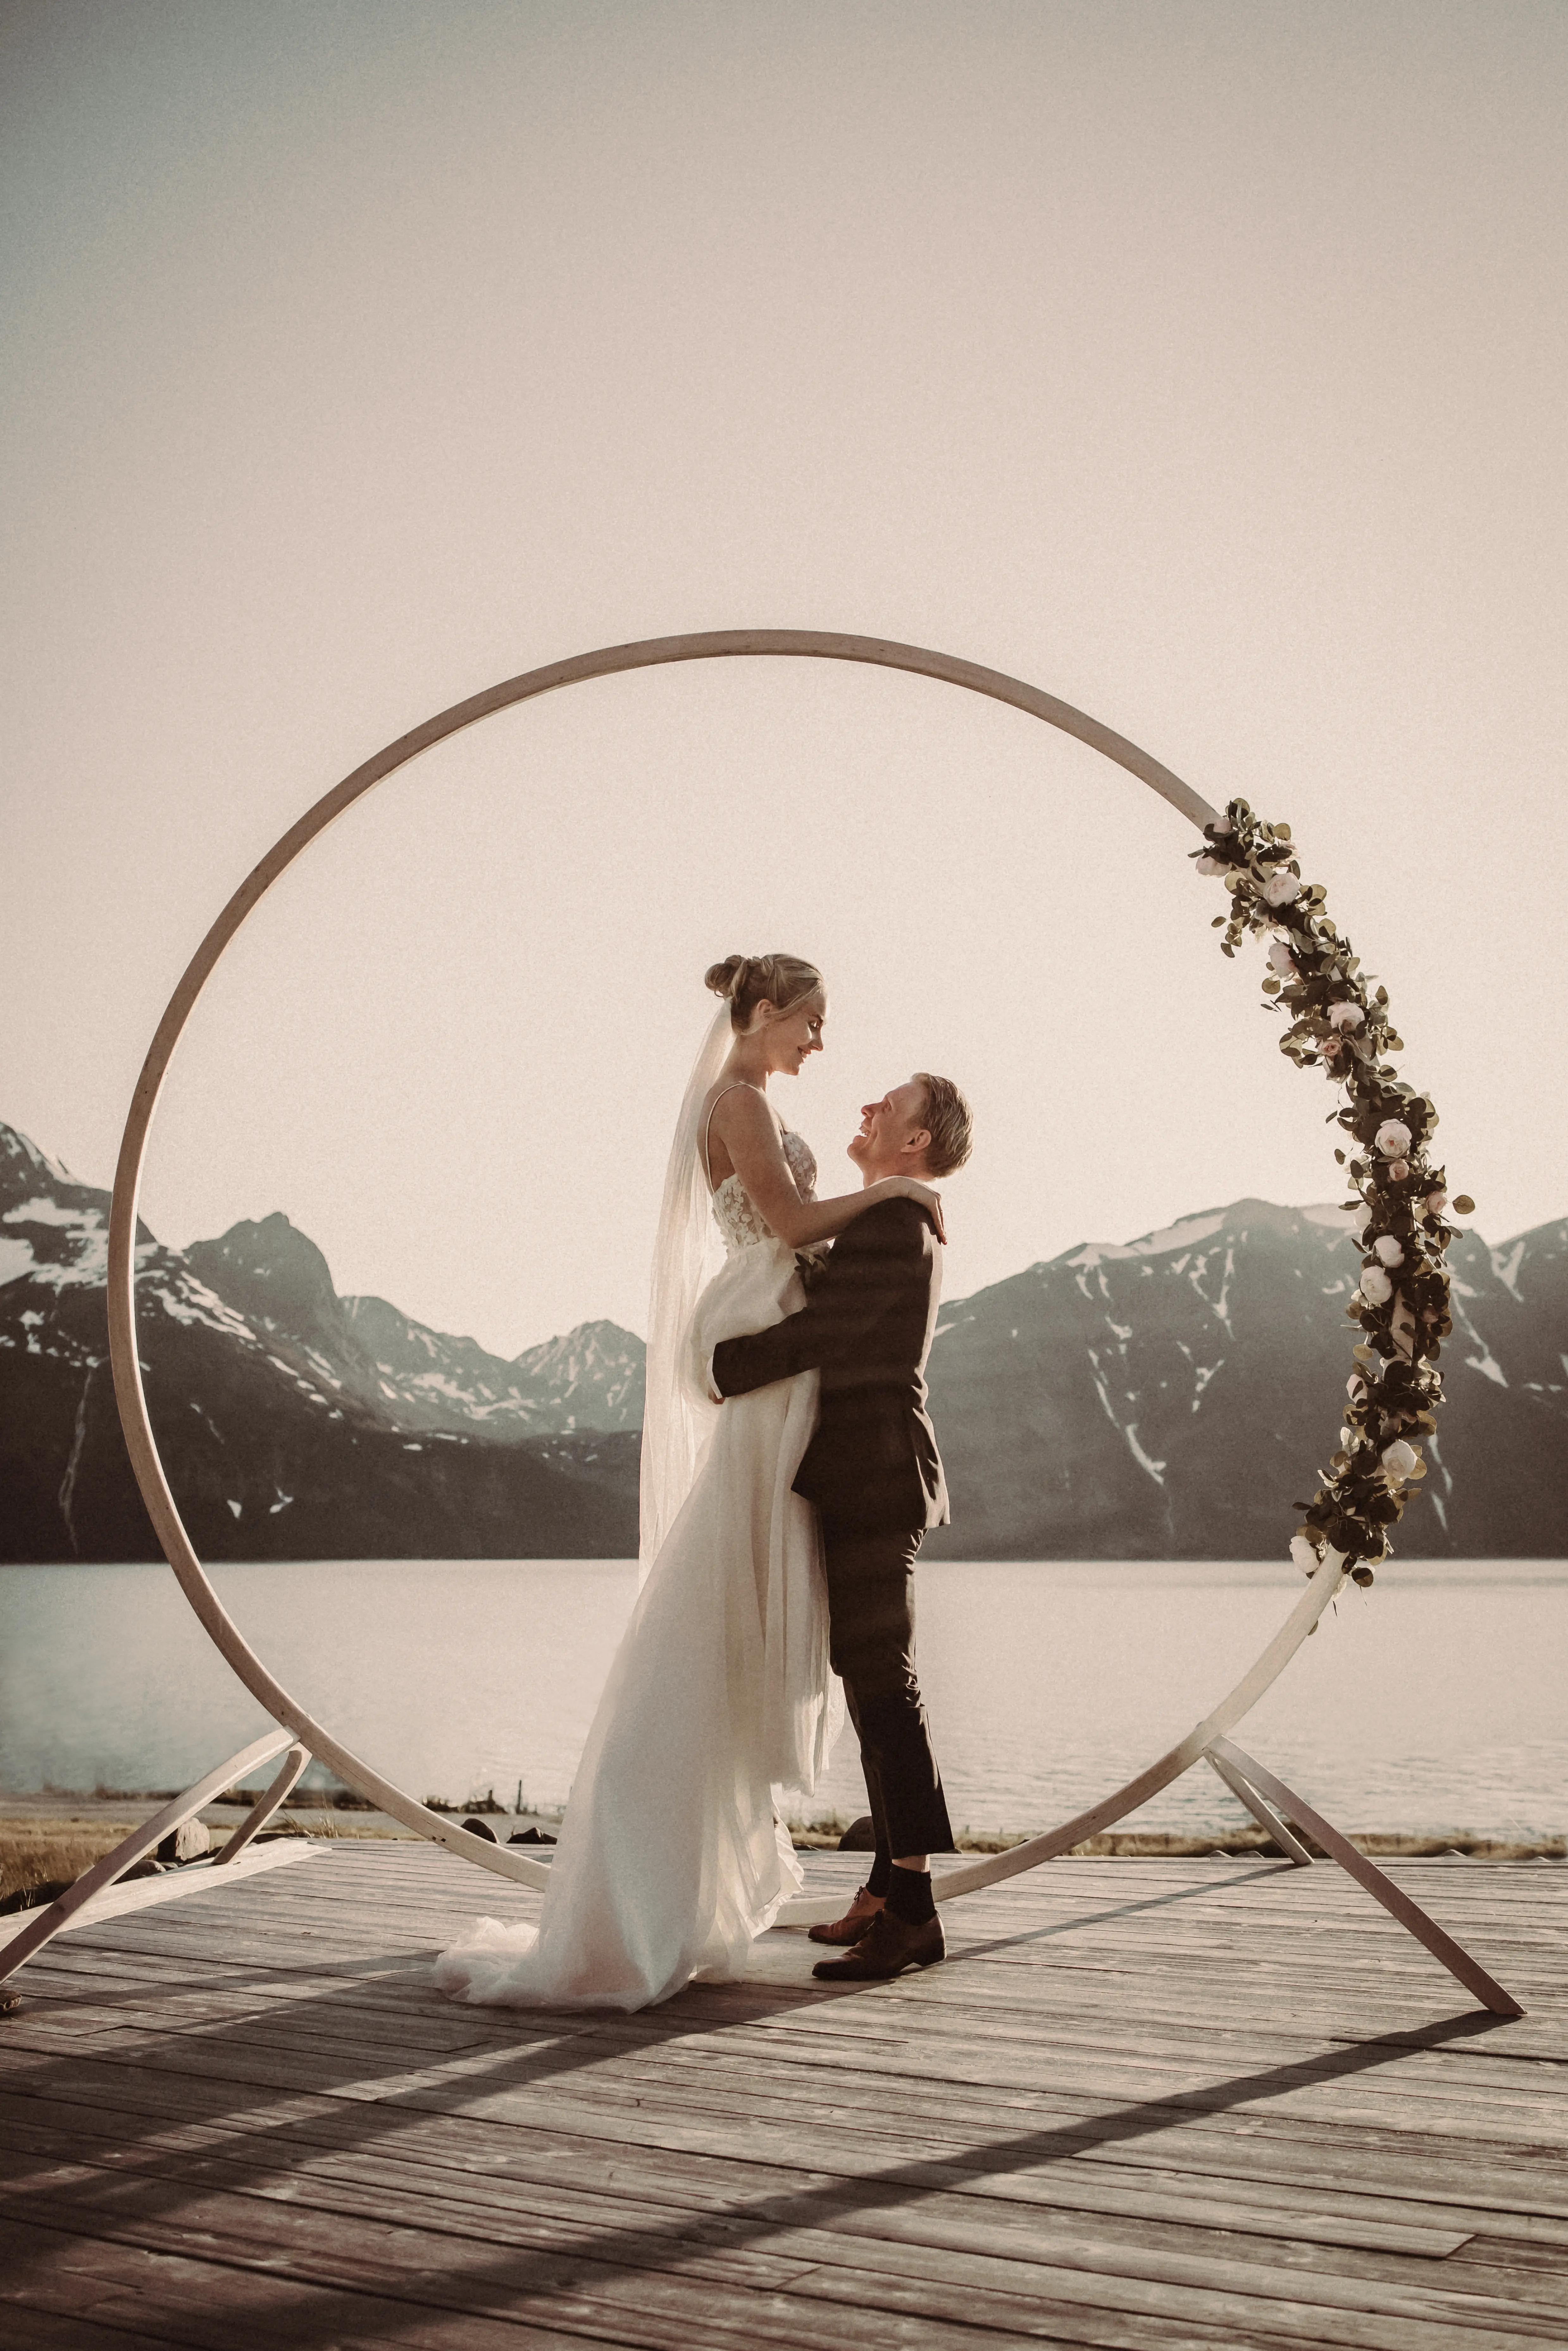 Exclusive wedding resort in Northern Norway